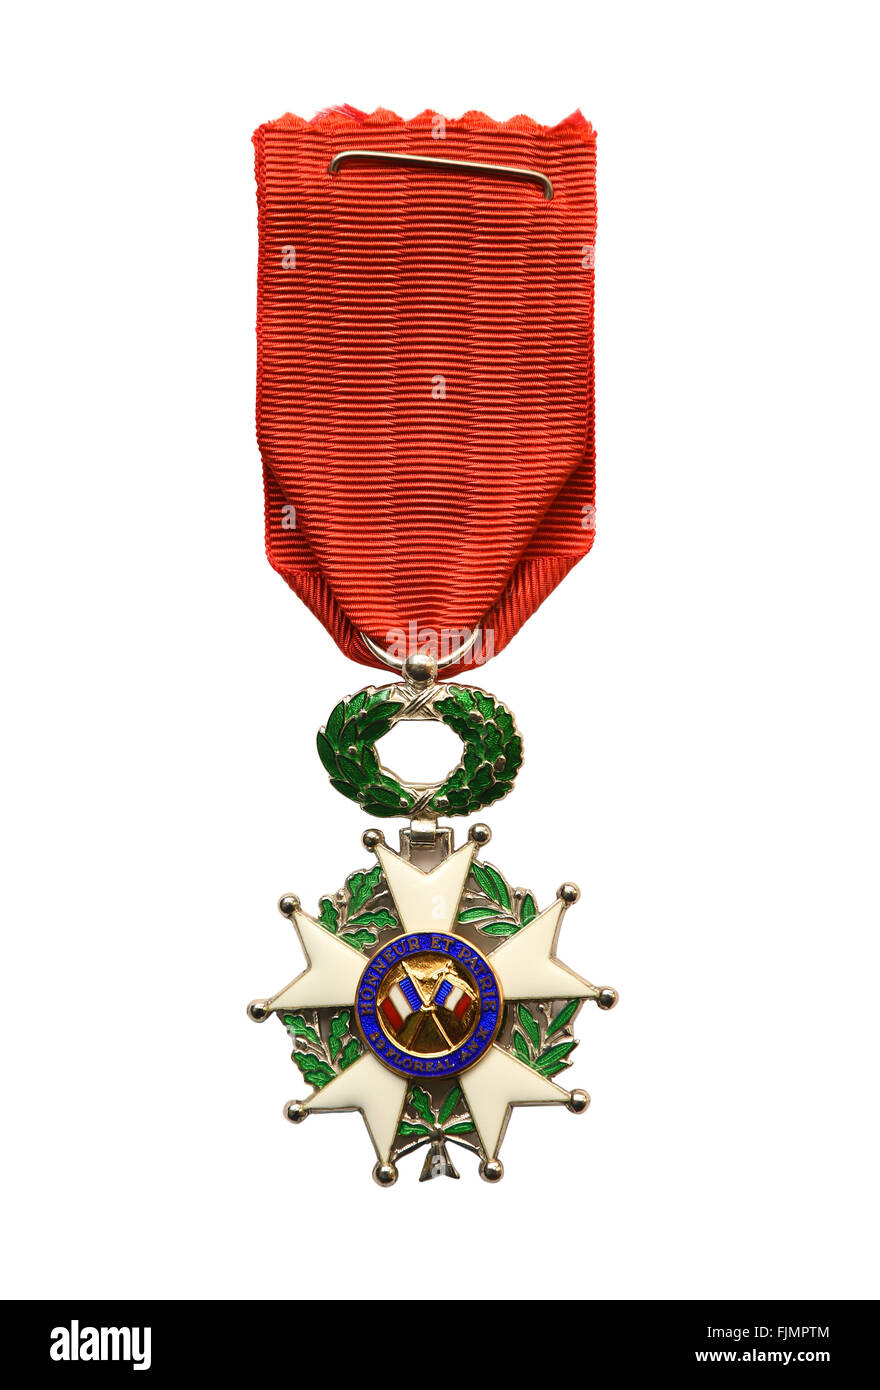 La Legione di Onore medaglia, Ordine Nazionale della Legione d Onore della Francia, Ordre National de la Légion d'honneur Foto Stock